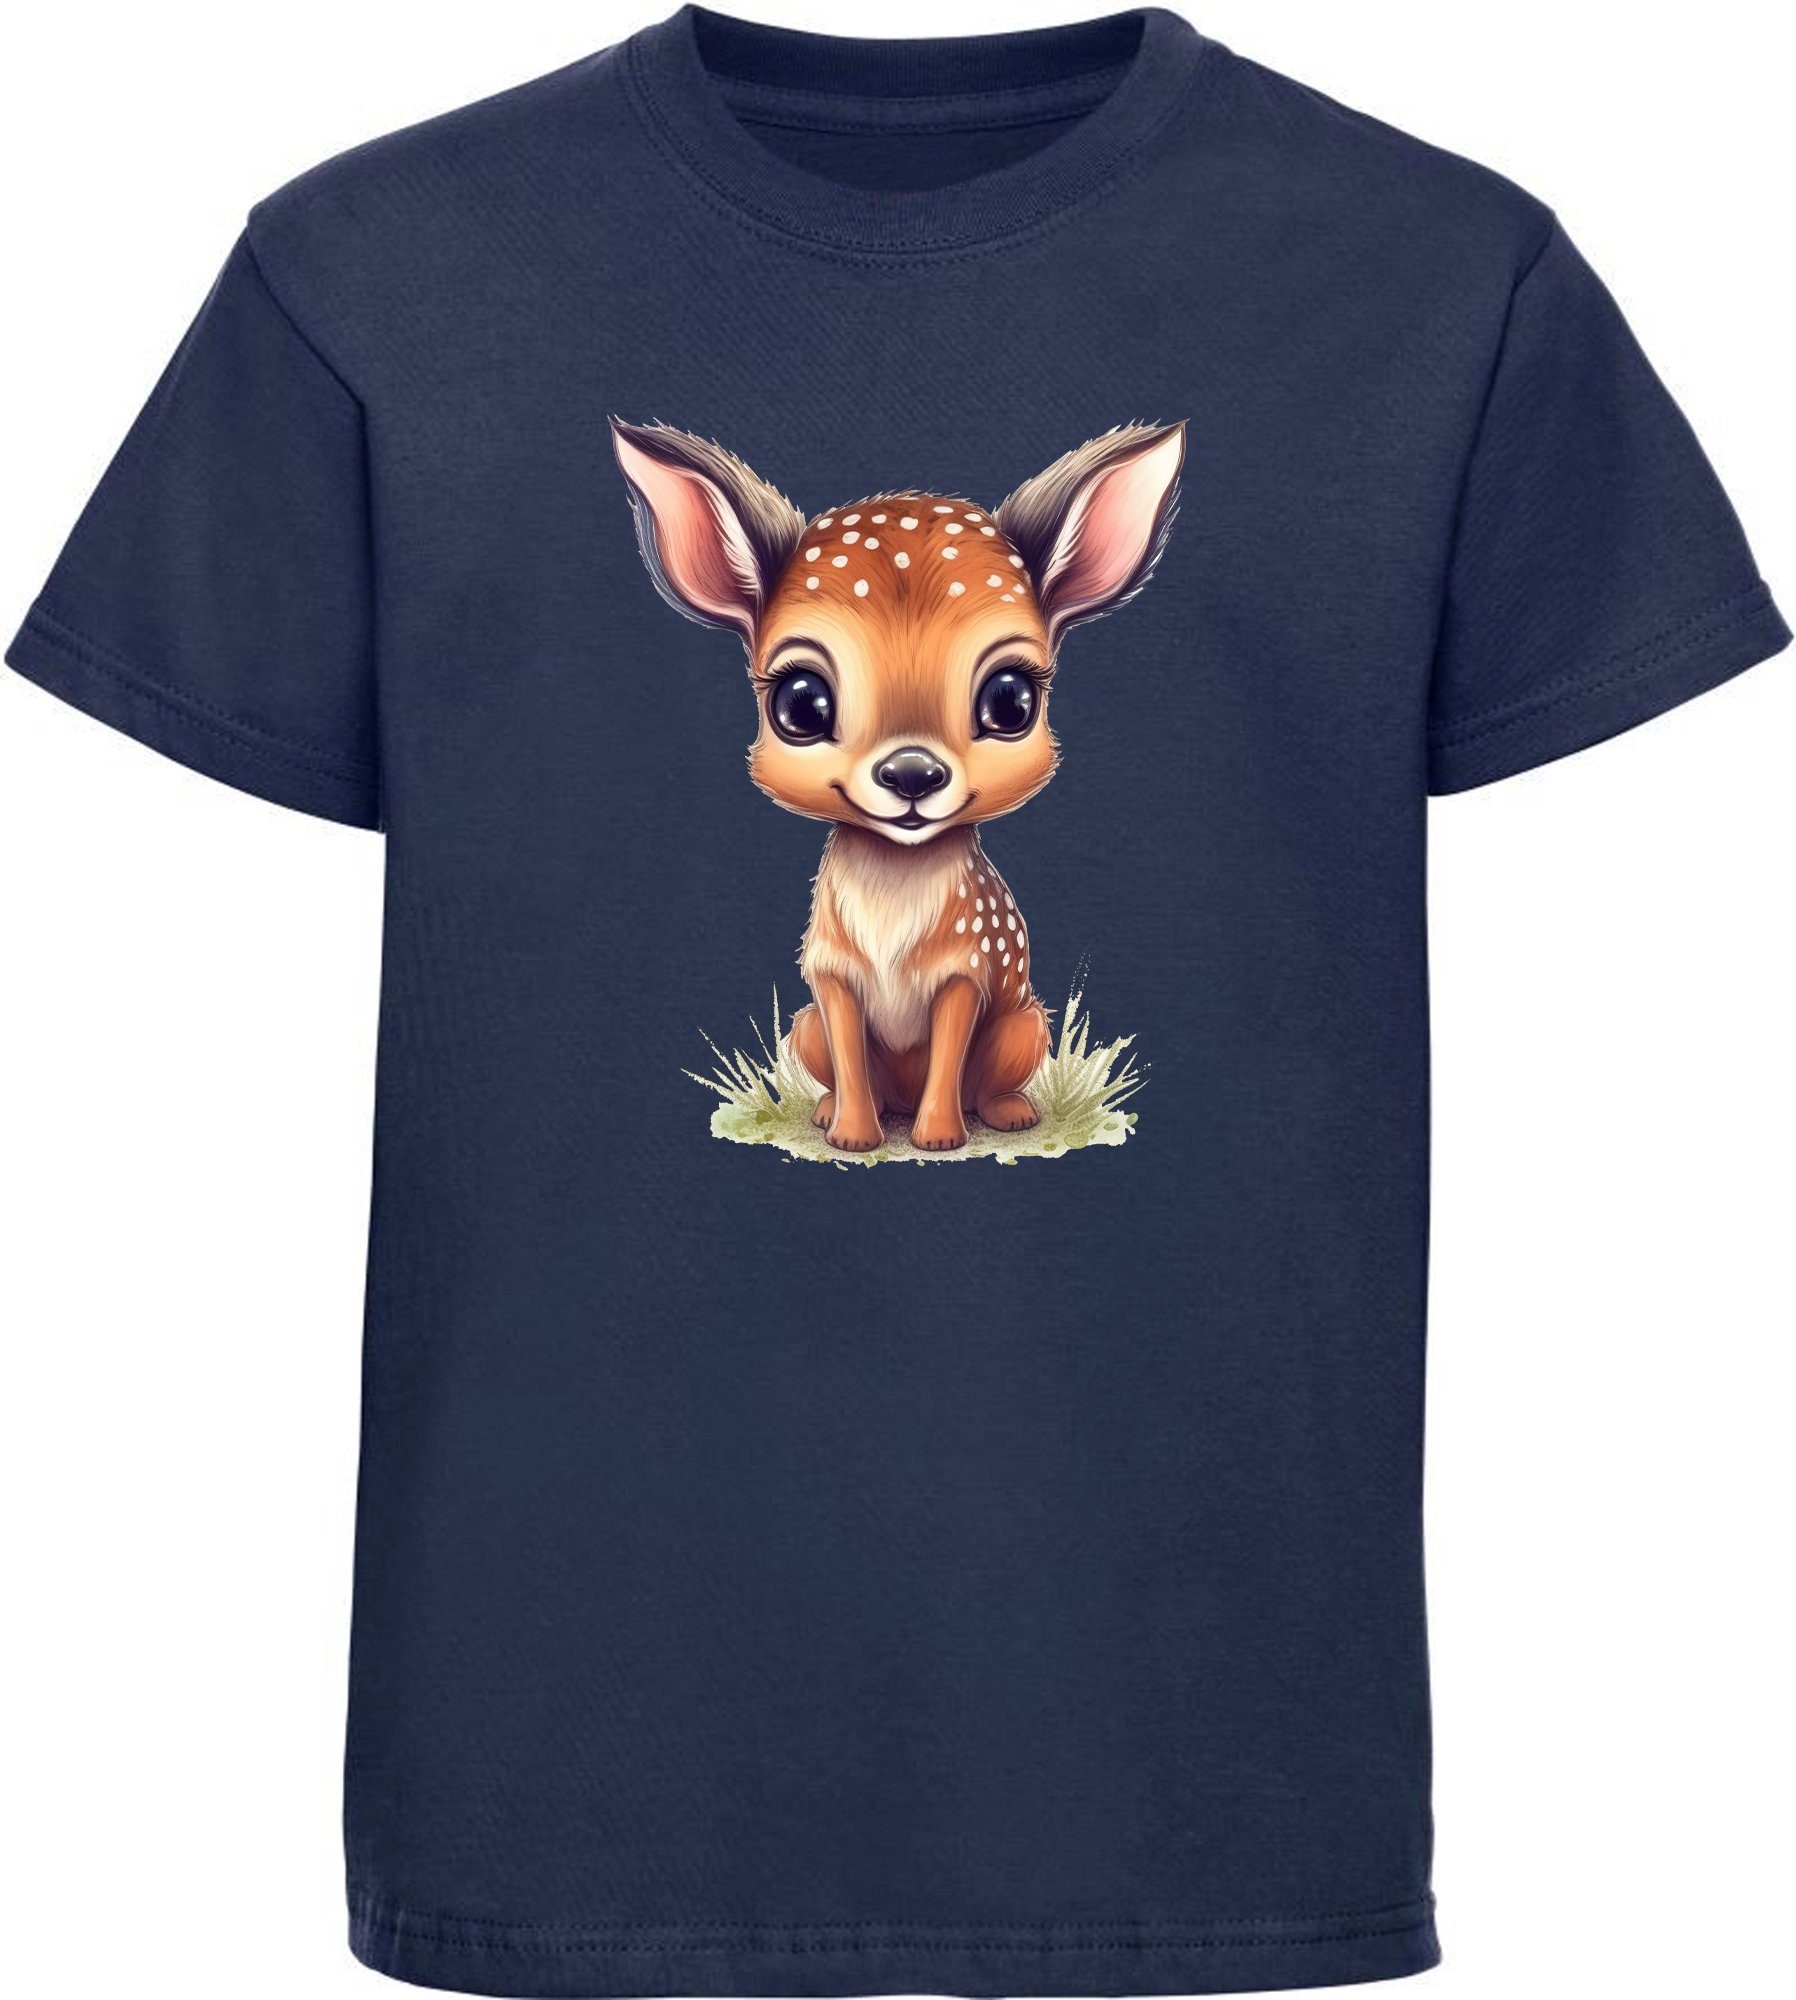 MyDesign24 T-Shirt Kinder Wildtier Print Shirt bedruckt - Baby Reh Rehkitz Baumwollshirt mit Aufdruck, i269 navy blau